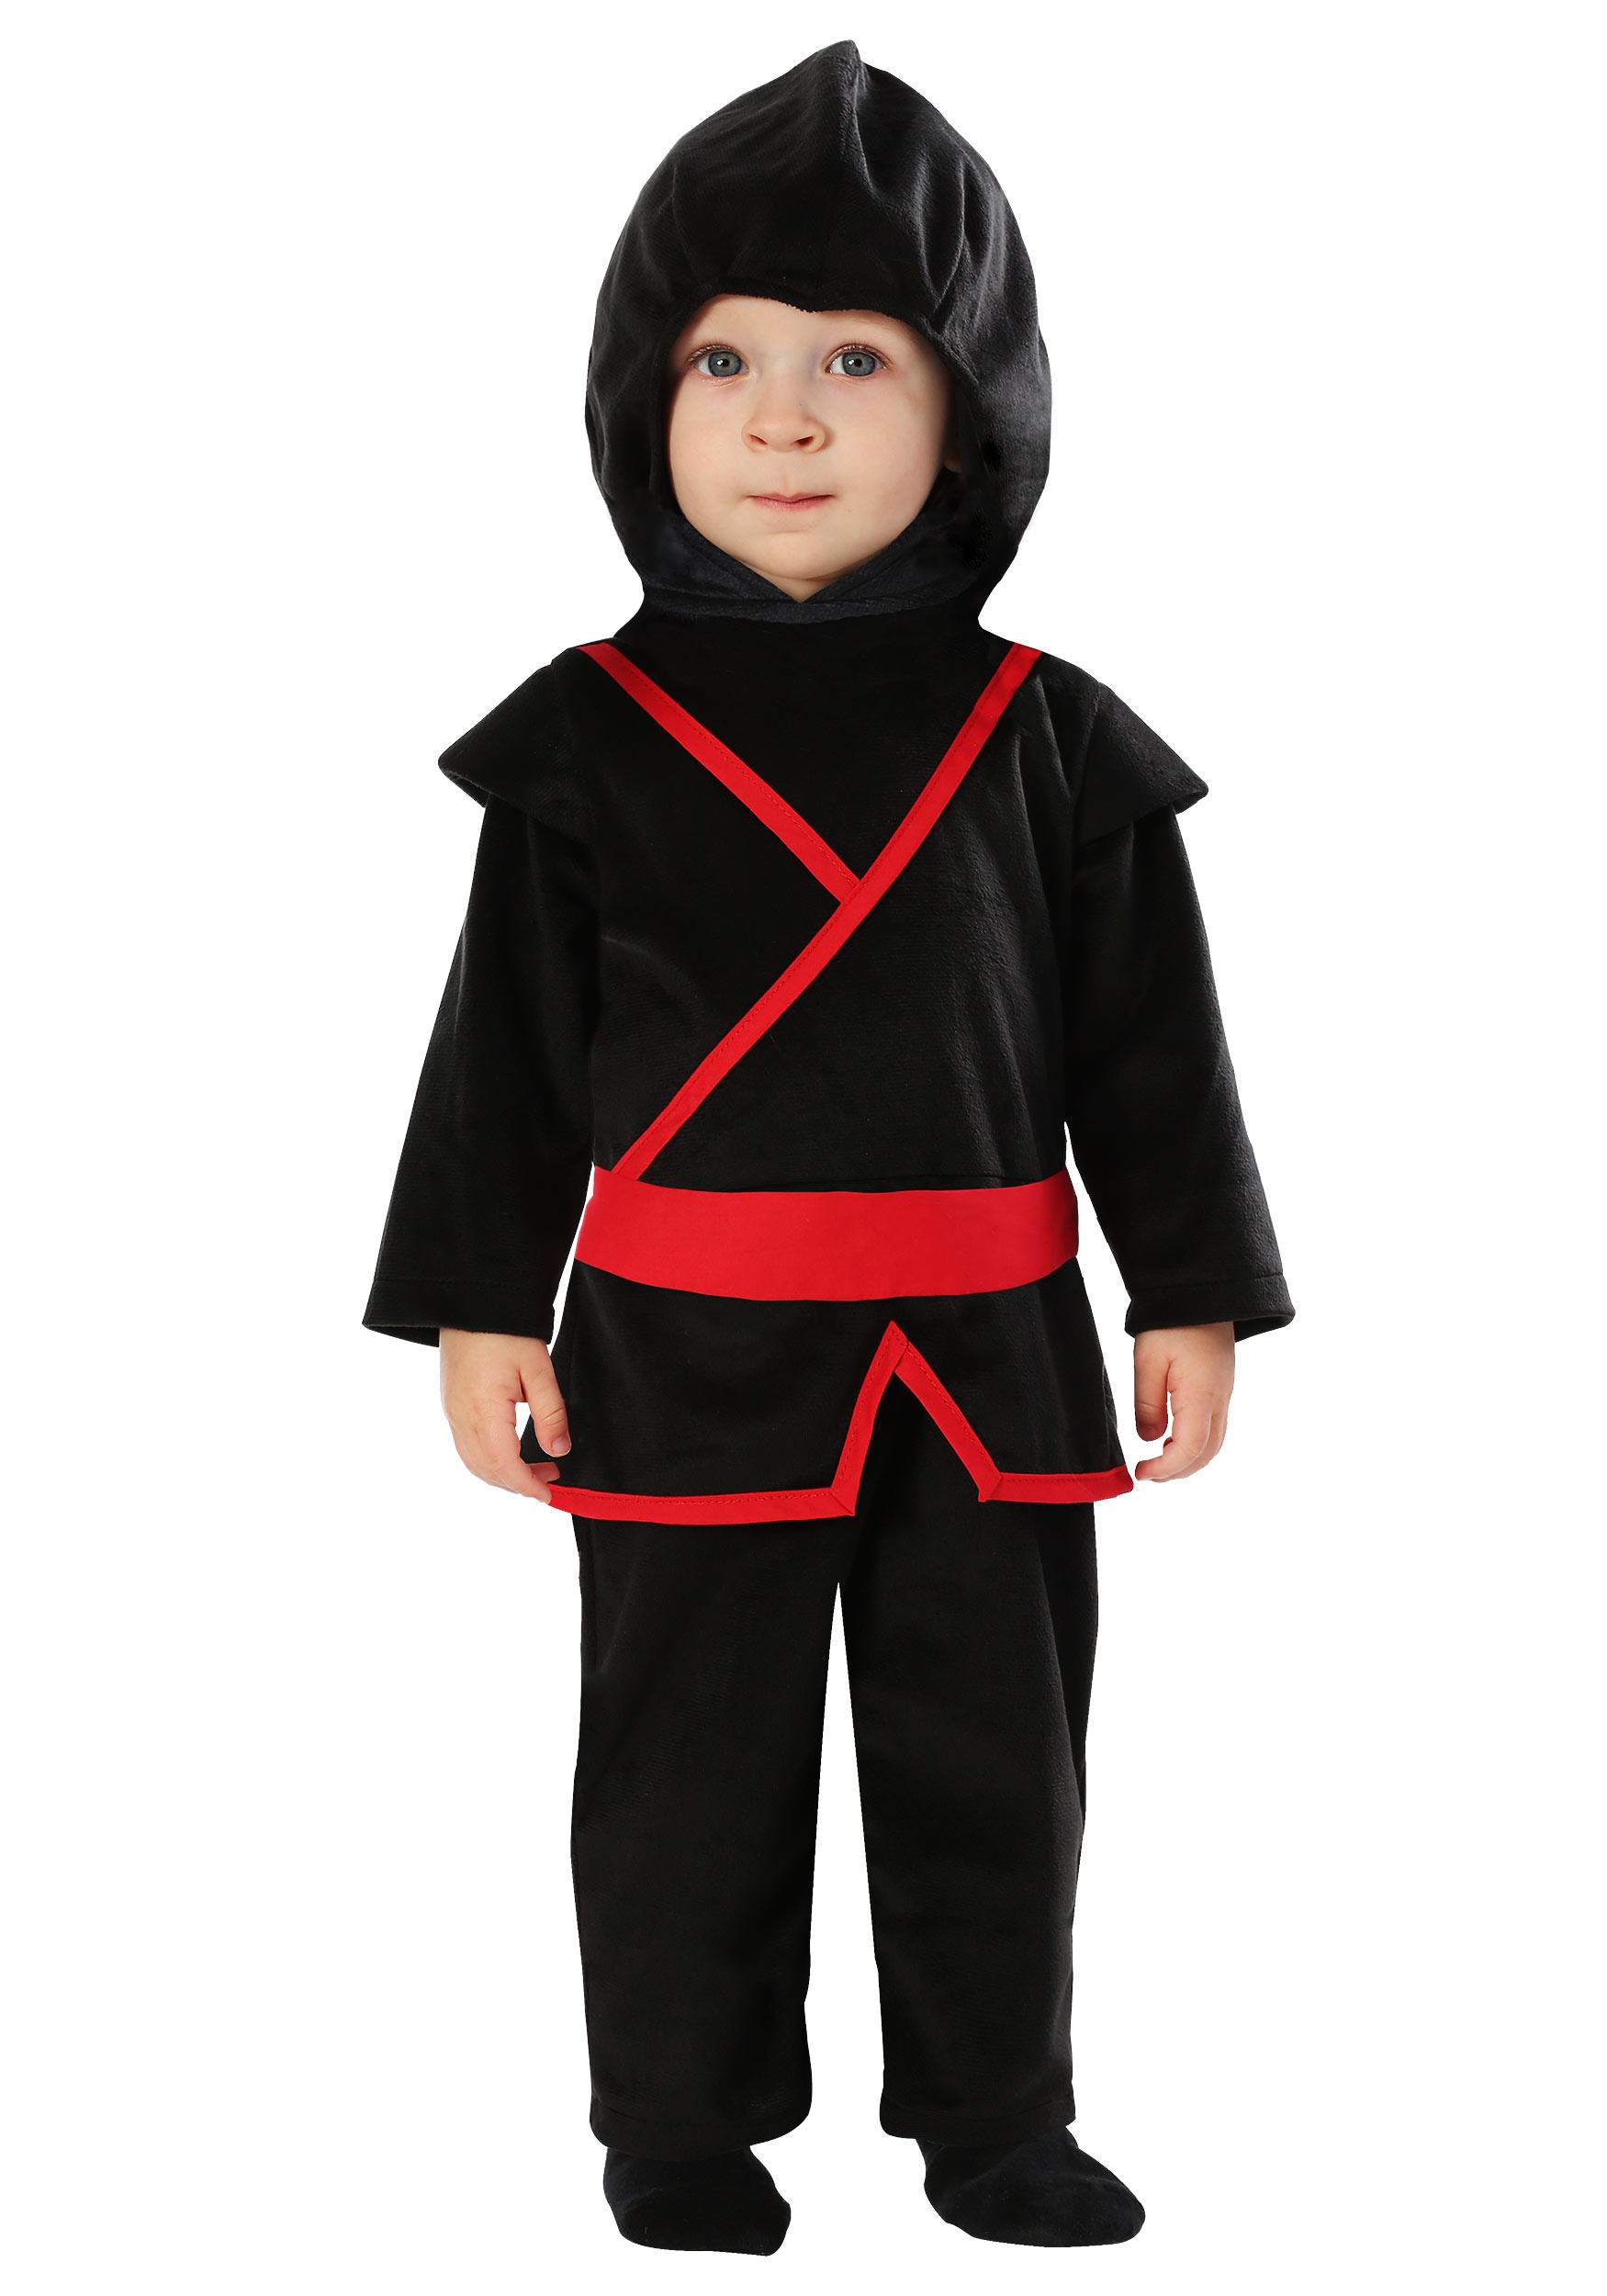 Acera estafa Por adelantado Disfraz de Ninja para bebé